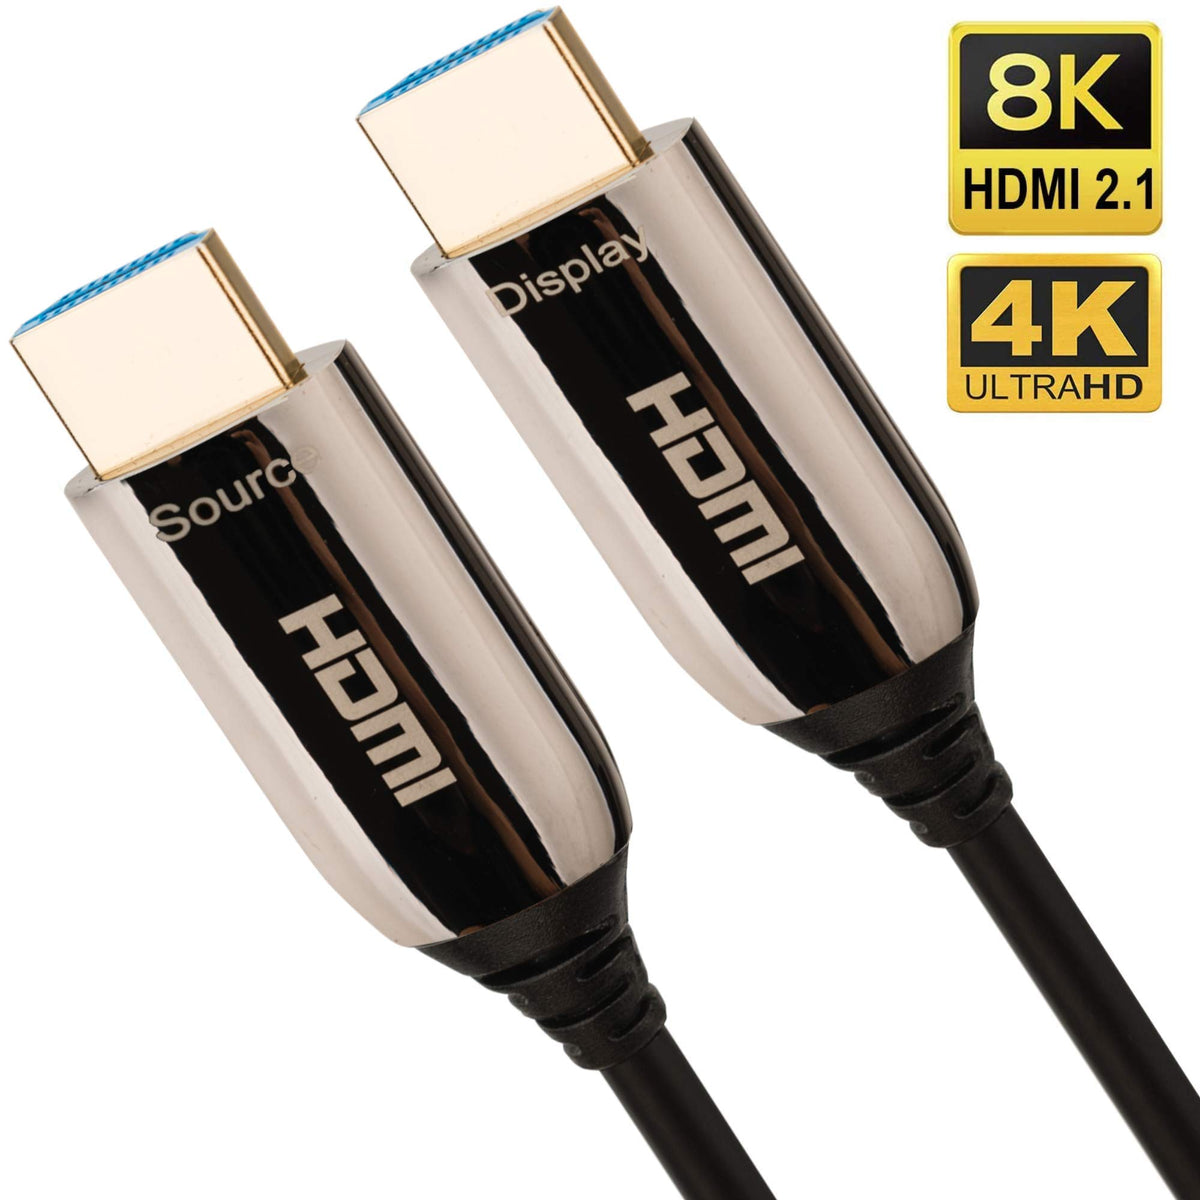 Pacroban Cable HDMI corto (1 pie 2 unidades) delgado 4K cable HDMI  flexible, 18Gbps de alta velocidad, HDR10+, YUV 4:4:4 Chroma, negro